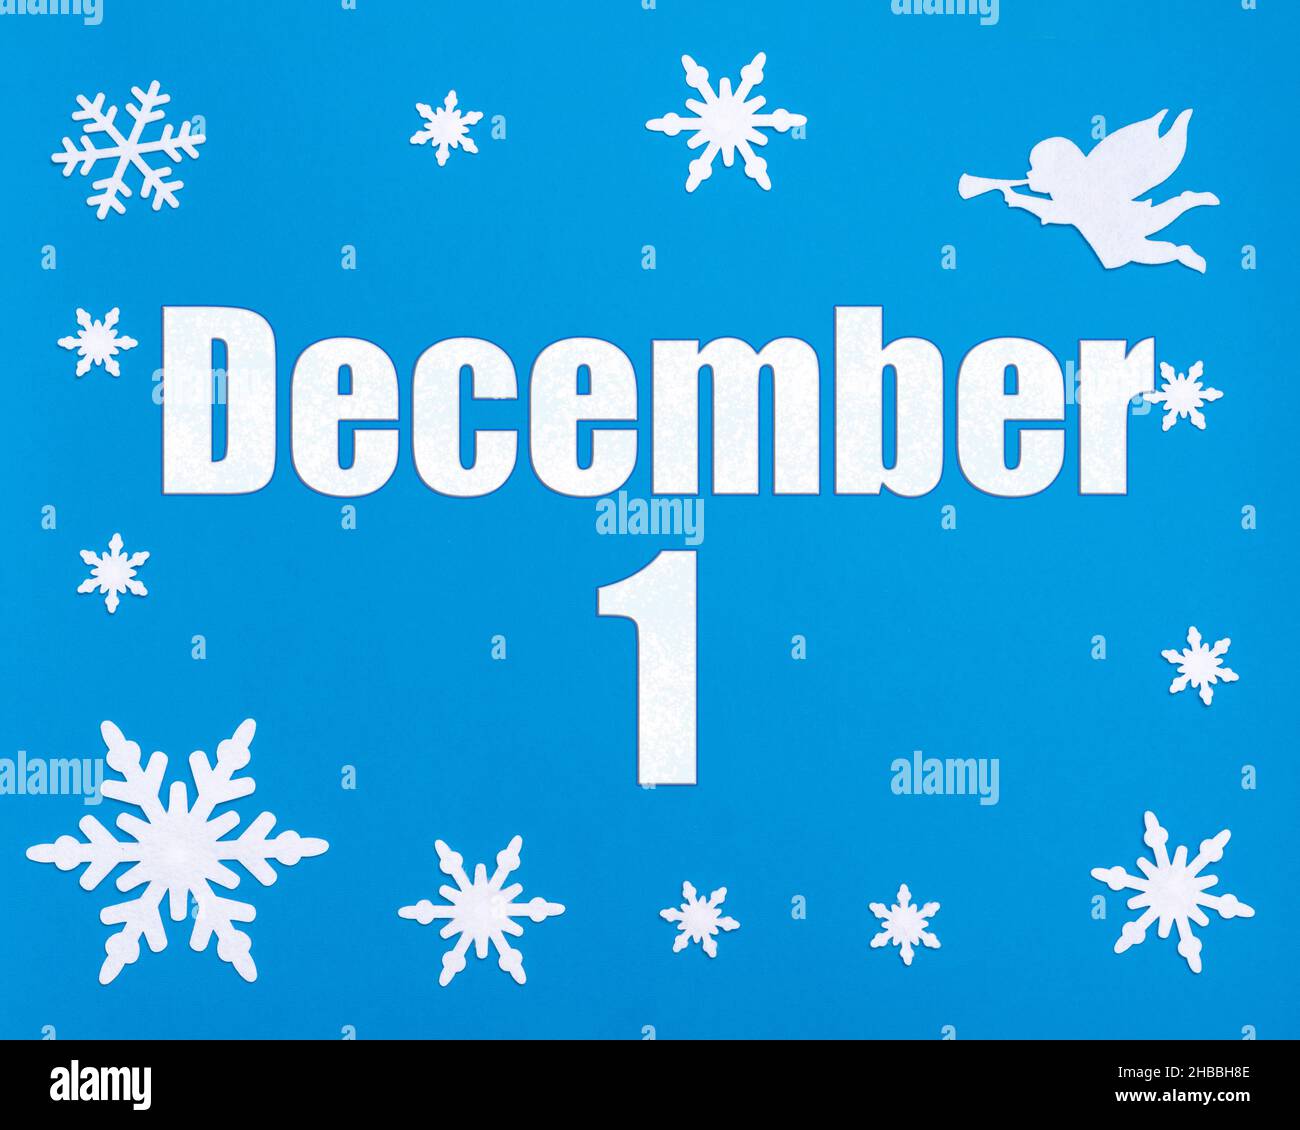 Décembre 1st.Fond bleu hiver avec flocons de neige, ange et date du calendrier.Jour 1 du mois.Concept mois d'hiver, jour de l'année. Banque D'Images